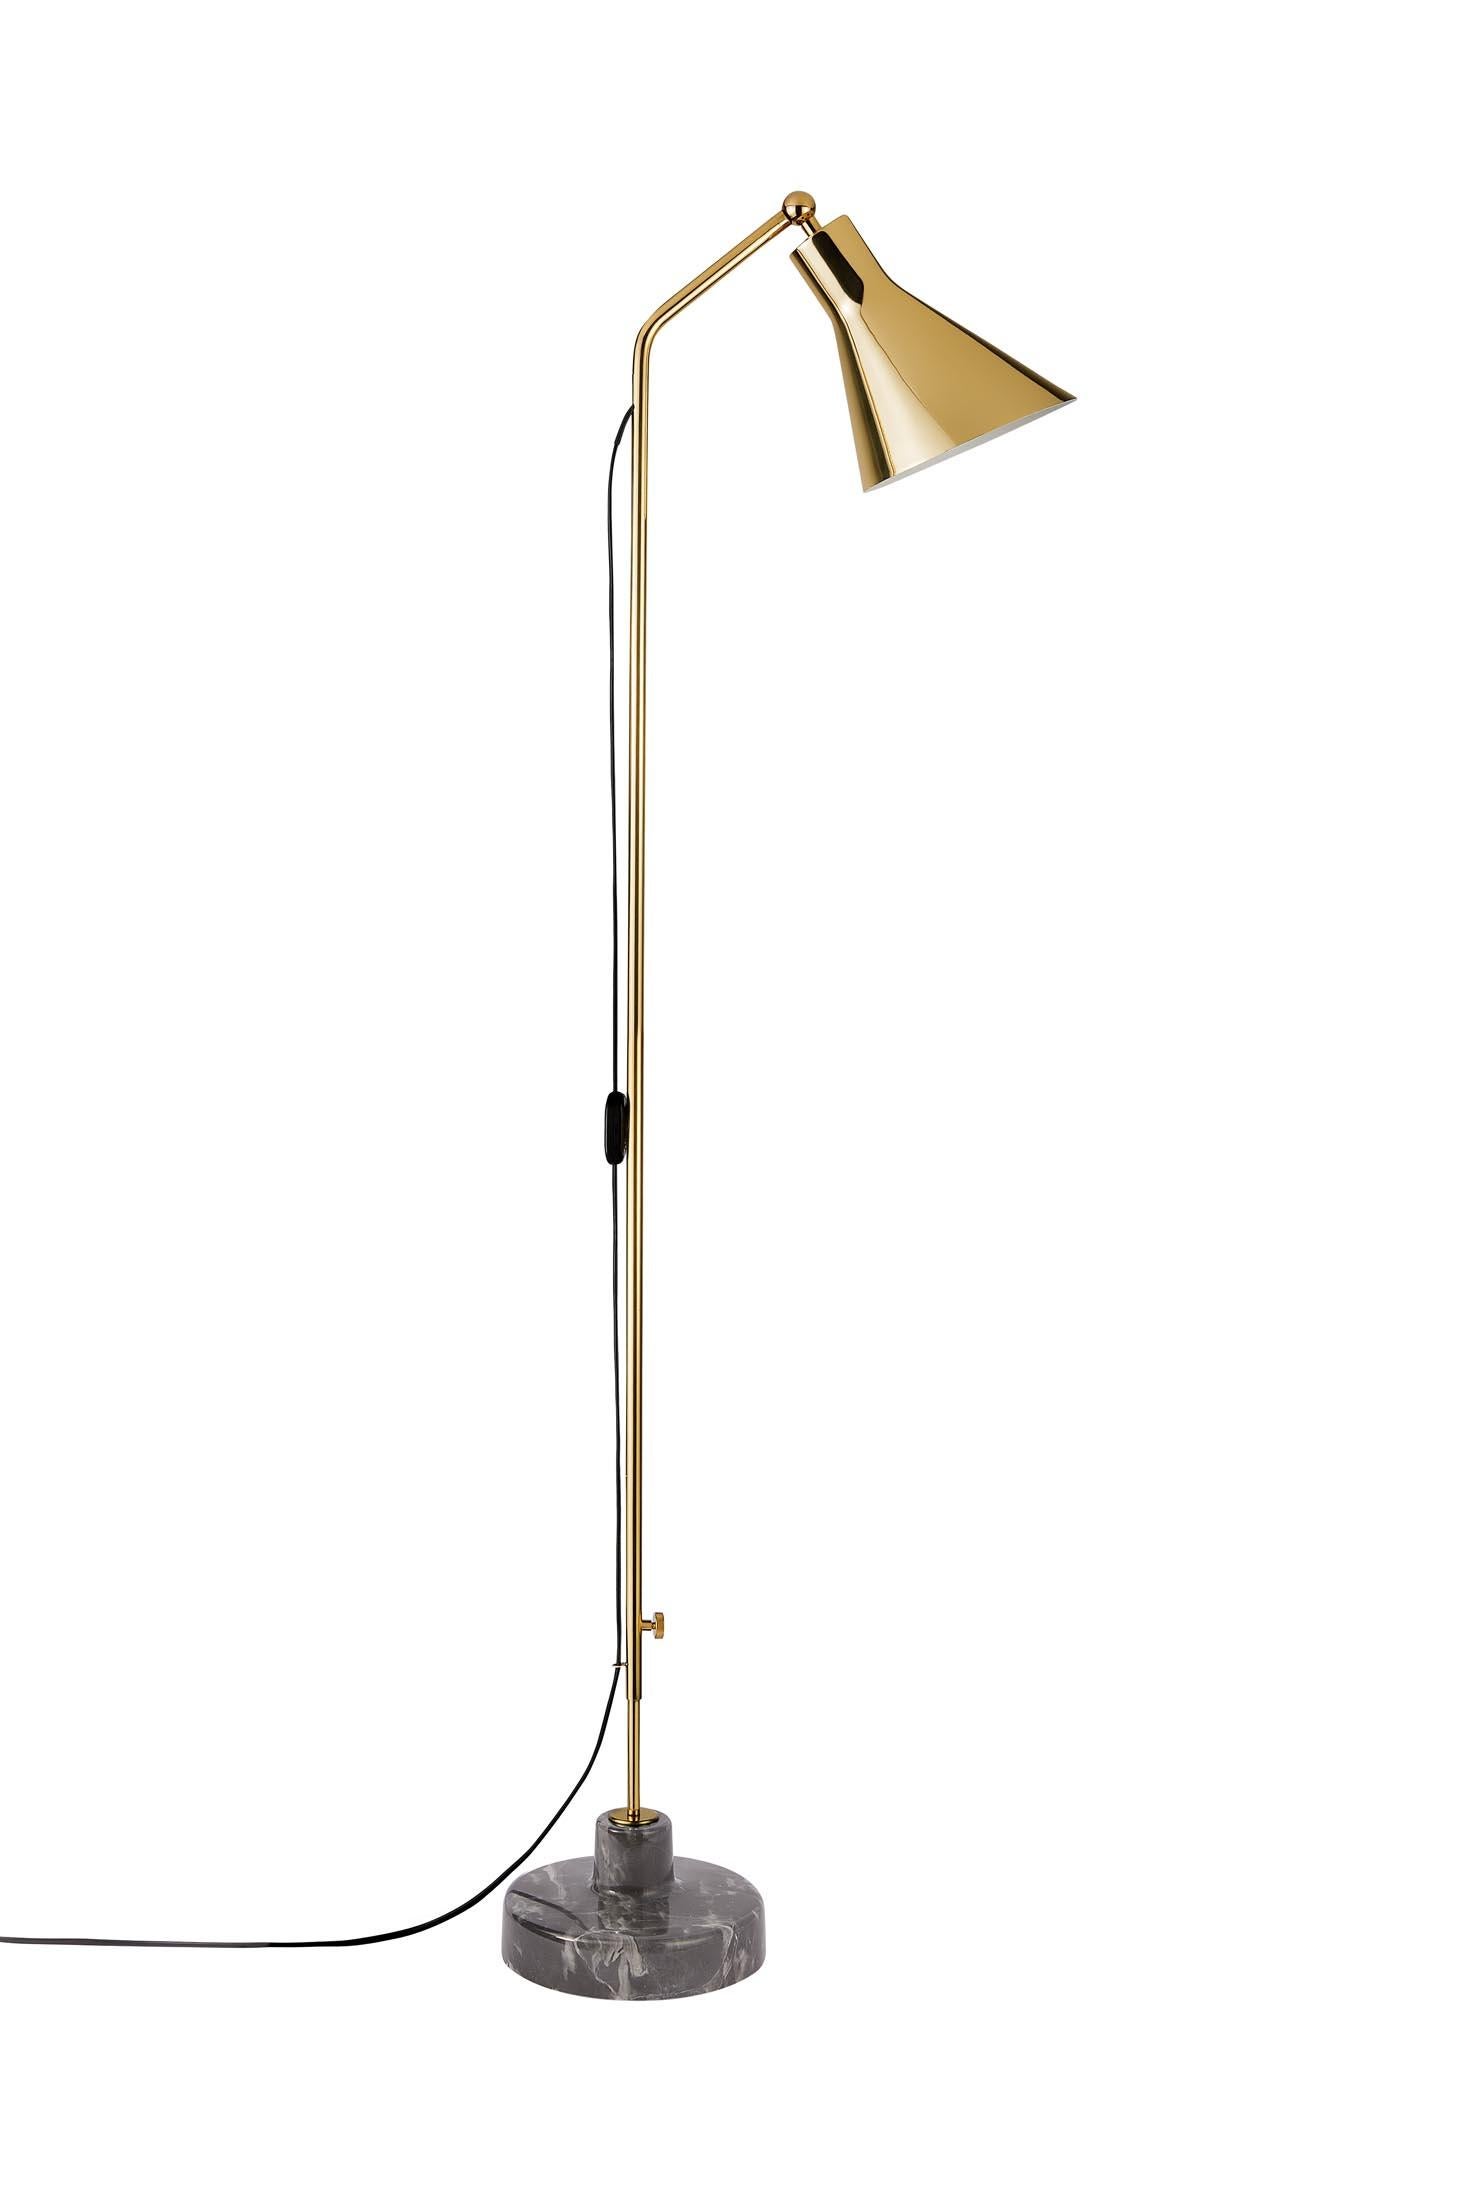 Contemporary Ignazio Gardella Alzabile Floor Lamp in Brass and Black Marble for Tato Italia For Sale